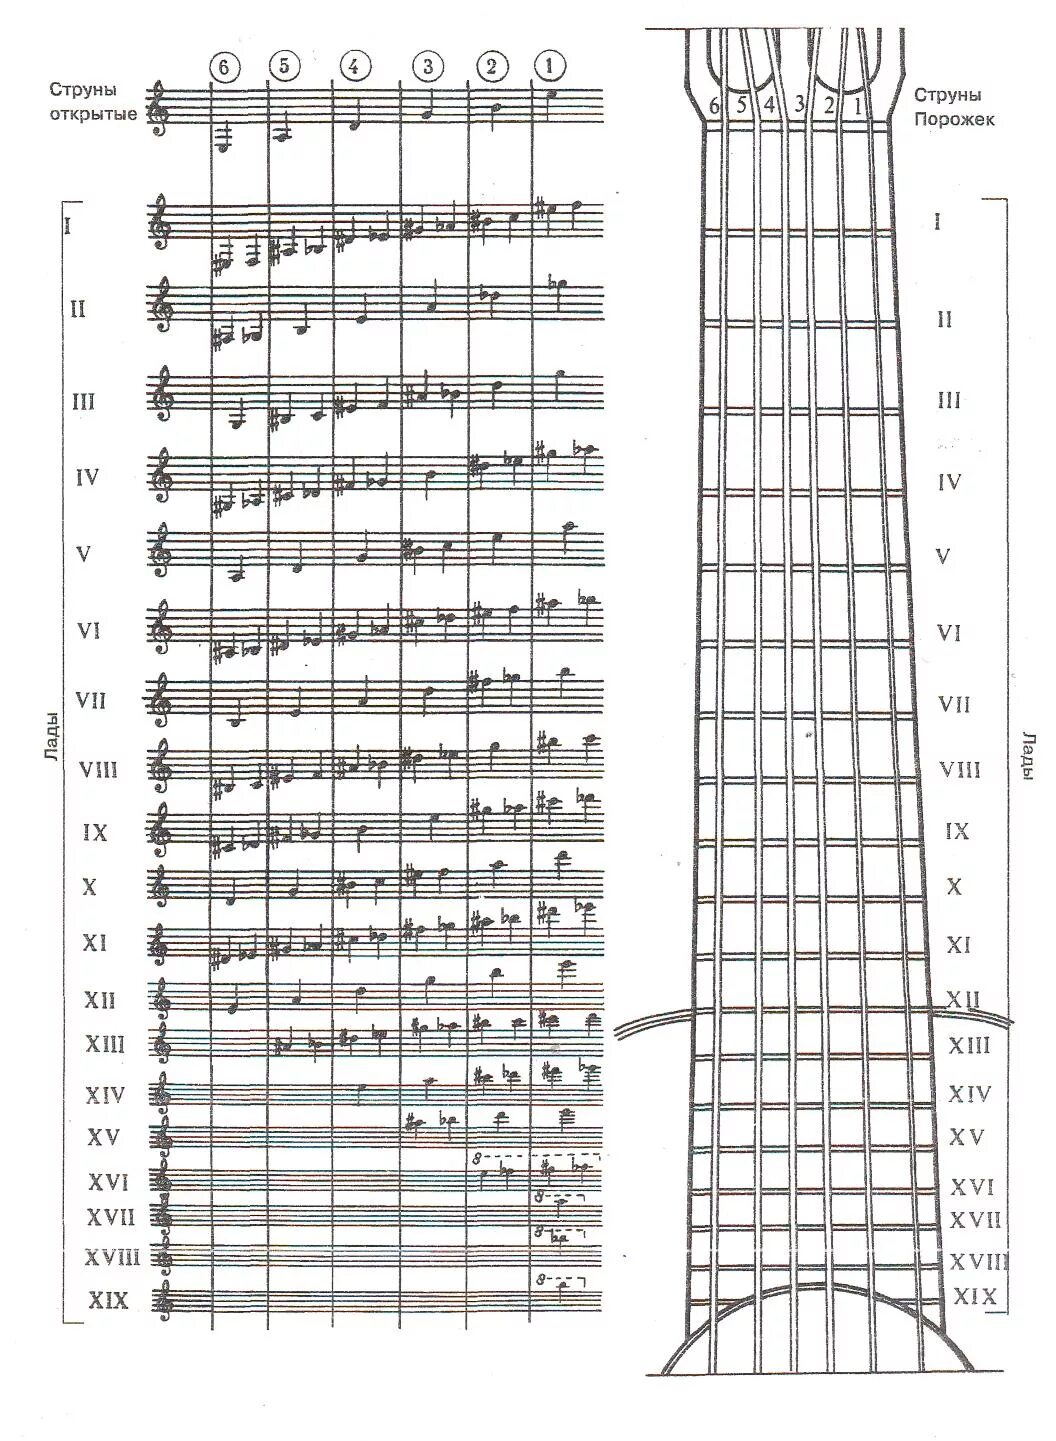 4 струна гитары нота. Расположение нот на грифе электрогитары таблица. Гитарные Ноты на грифе для начинающих. Расположение струн на грифе 6 струнной. Таблица ладов и струн на гитаре.